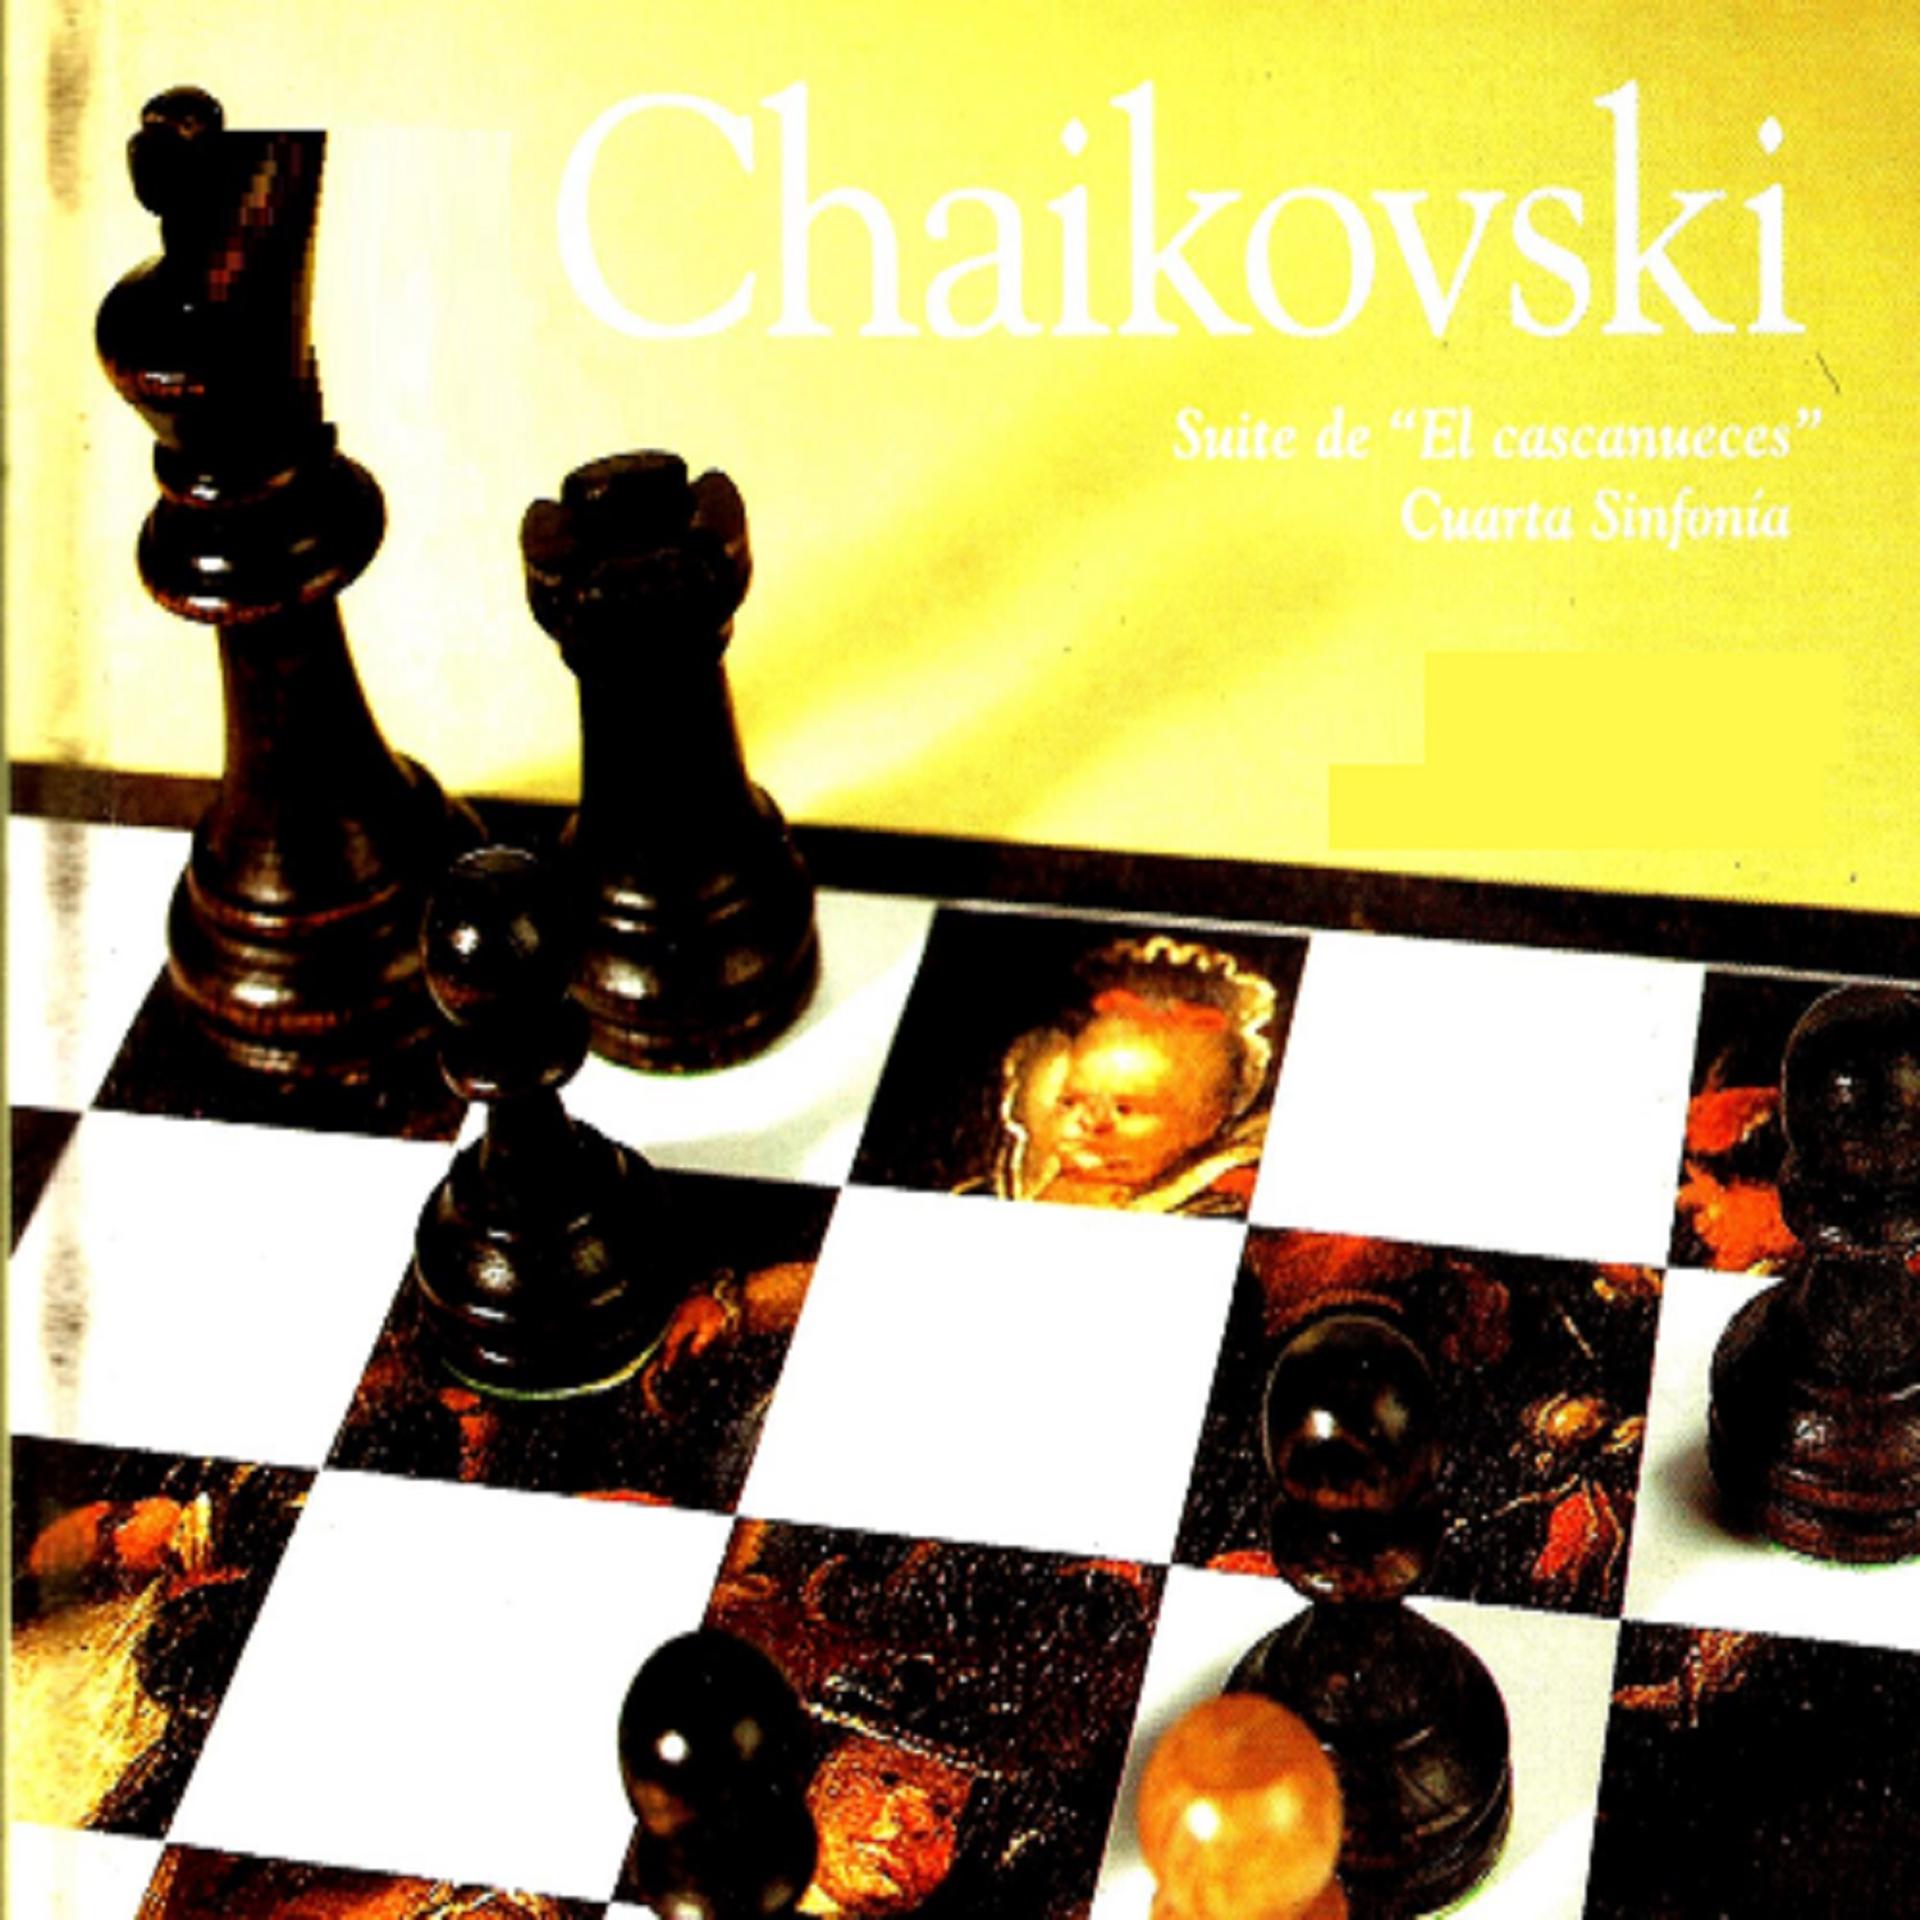 Постер альбома Suite de "El cascanueces" Cuarta Sinfonía, Chaikovski